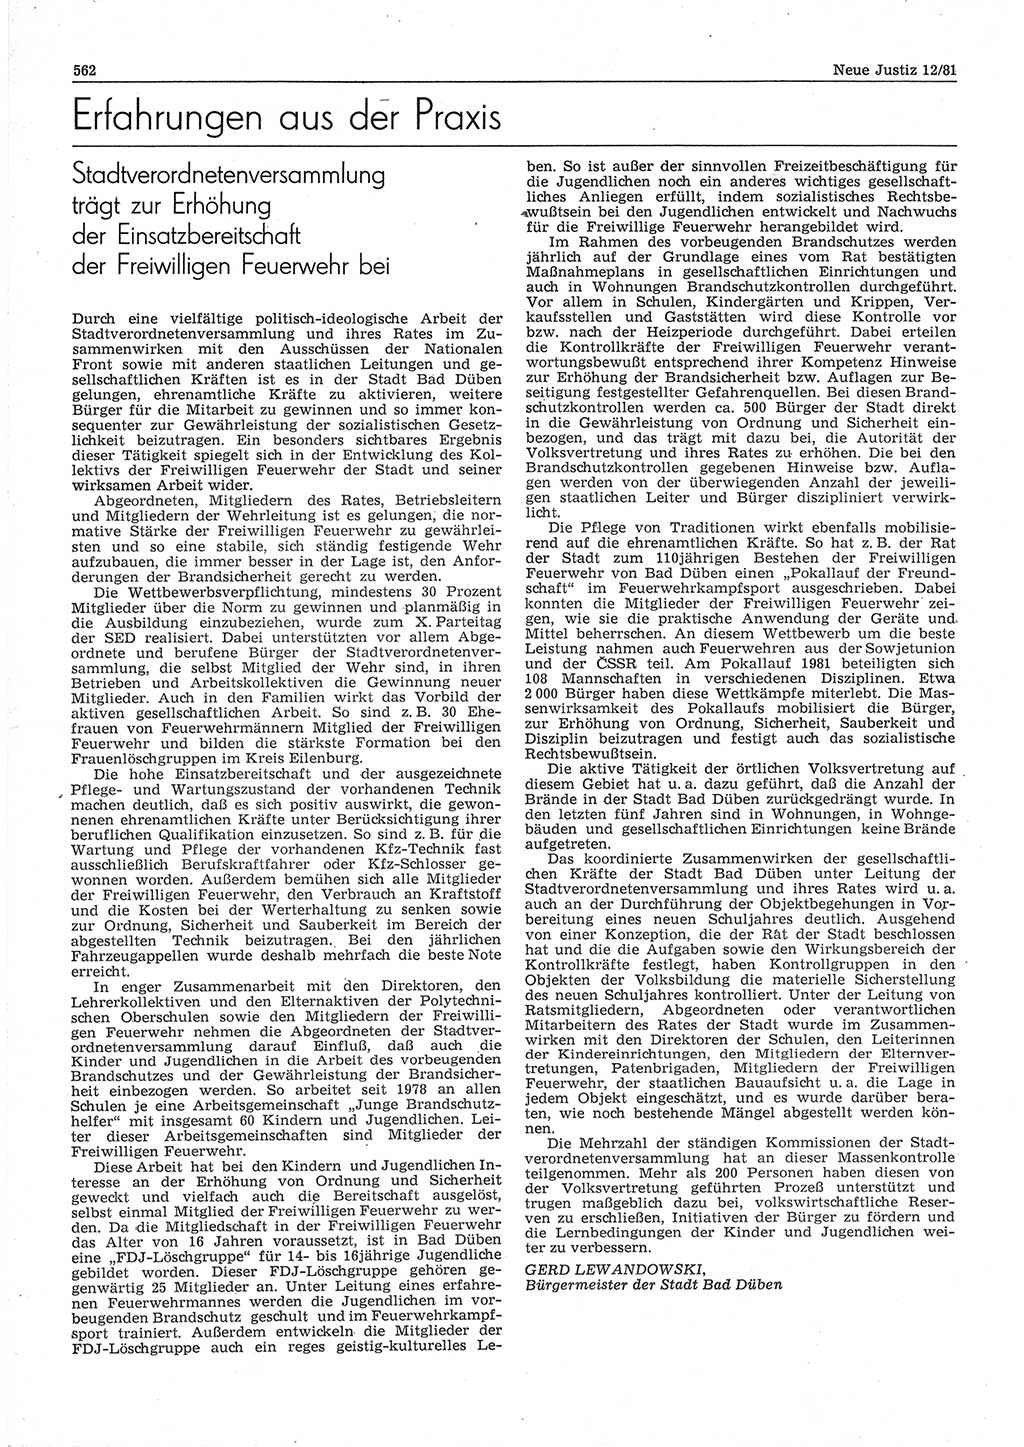 Neue Justiz (NJ), Zeitschrift für sozialistisches Recht und Gesetzlichkeit [Deutsche Demokratische Republik (DDR)], 35. Jahrgang 1981, Seite 562 (NJ DDR 1981, S. 562)